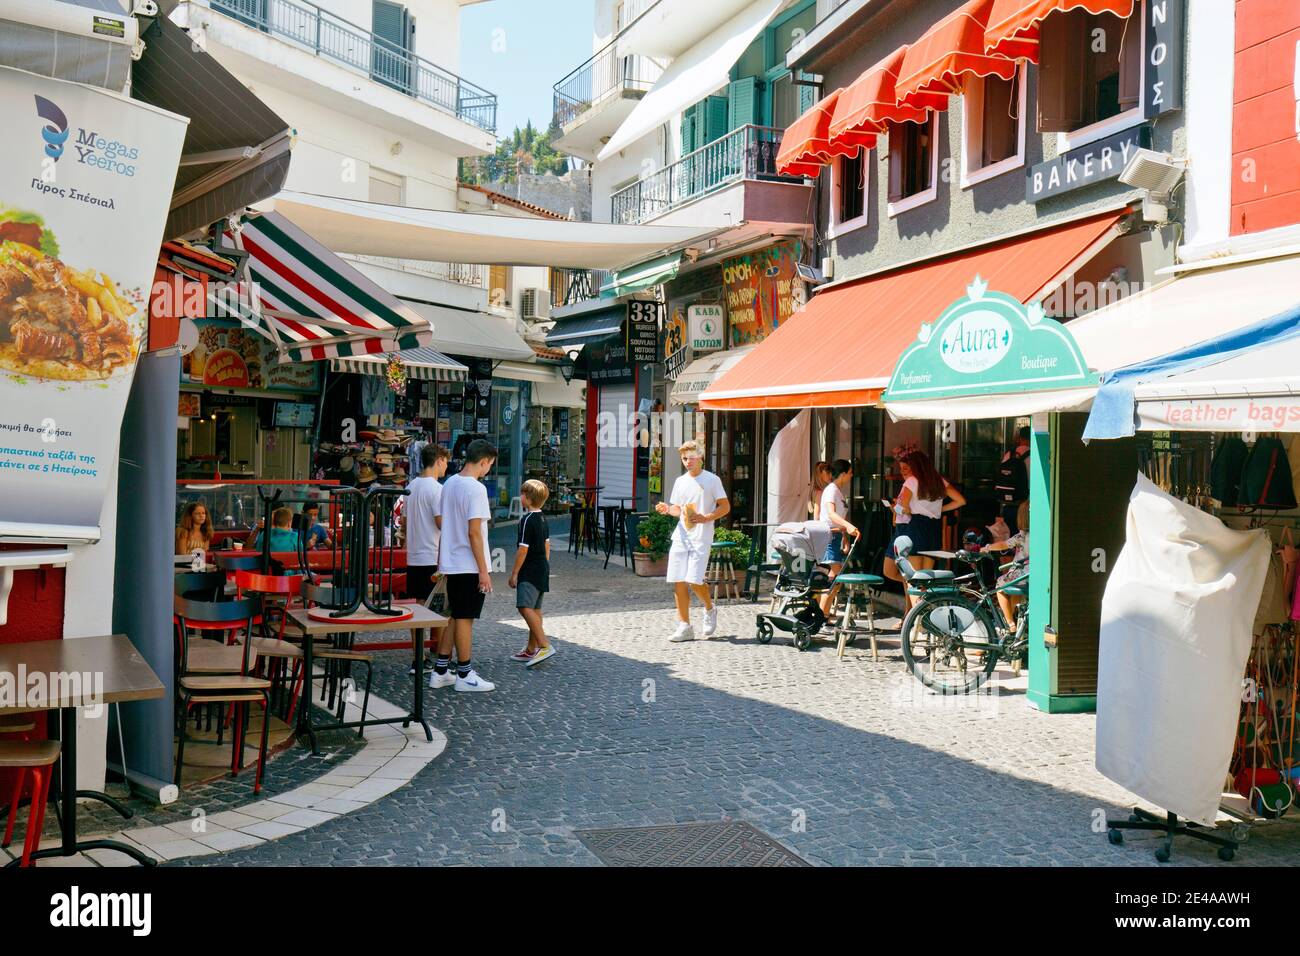 Comportement des gens à Corona Times en Grèce, avec et sans masque, avec des restaurants vides Banque D'Images